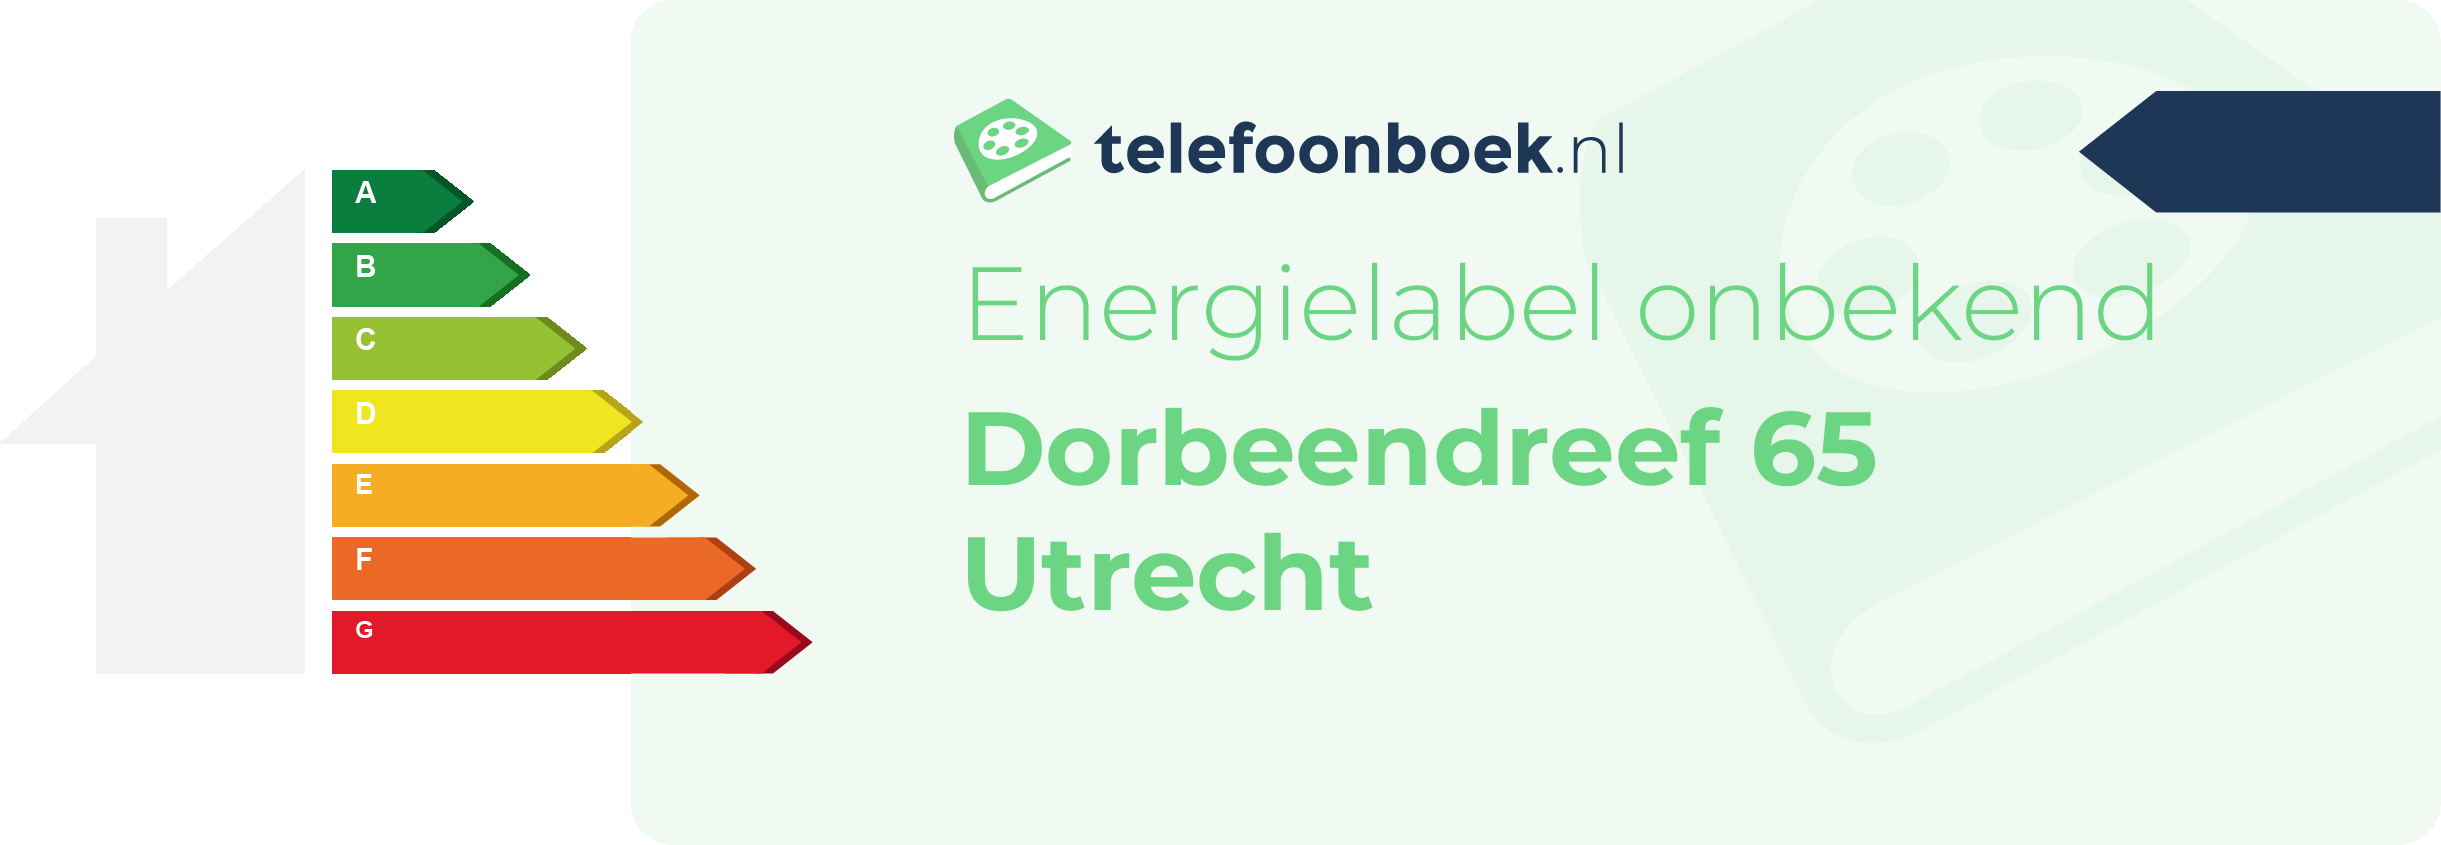 Energielabel Dorbeendreef 65 Utrecht